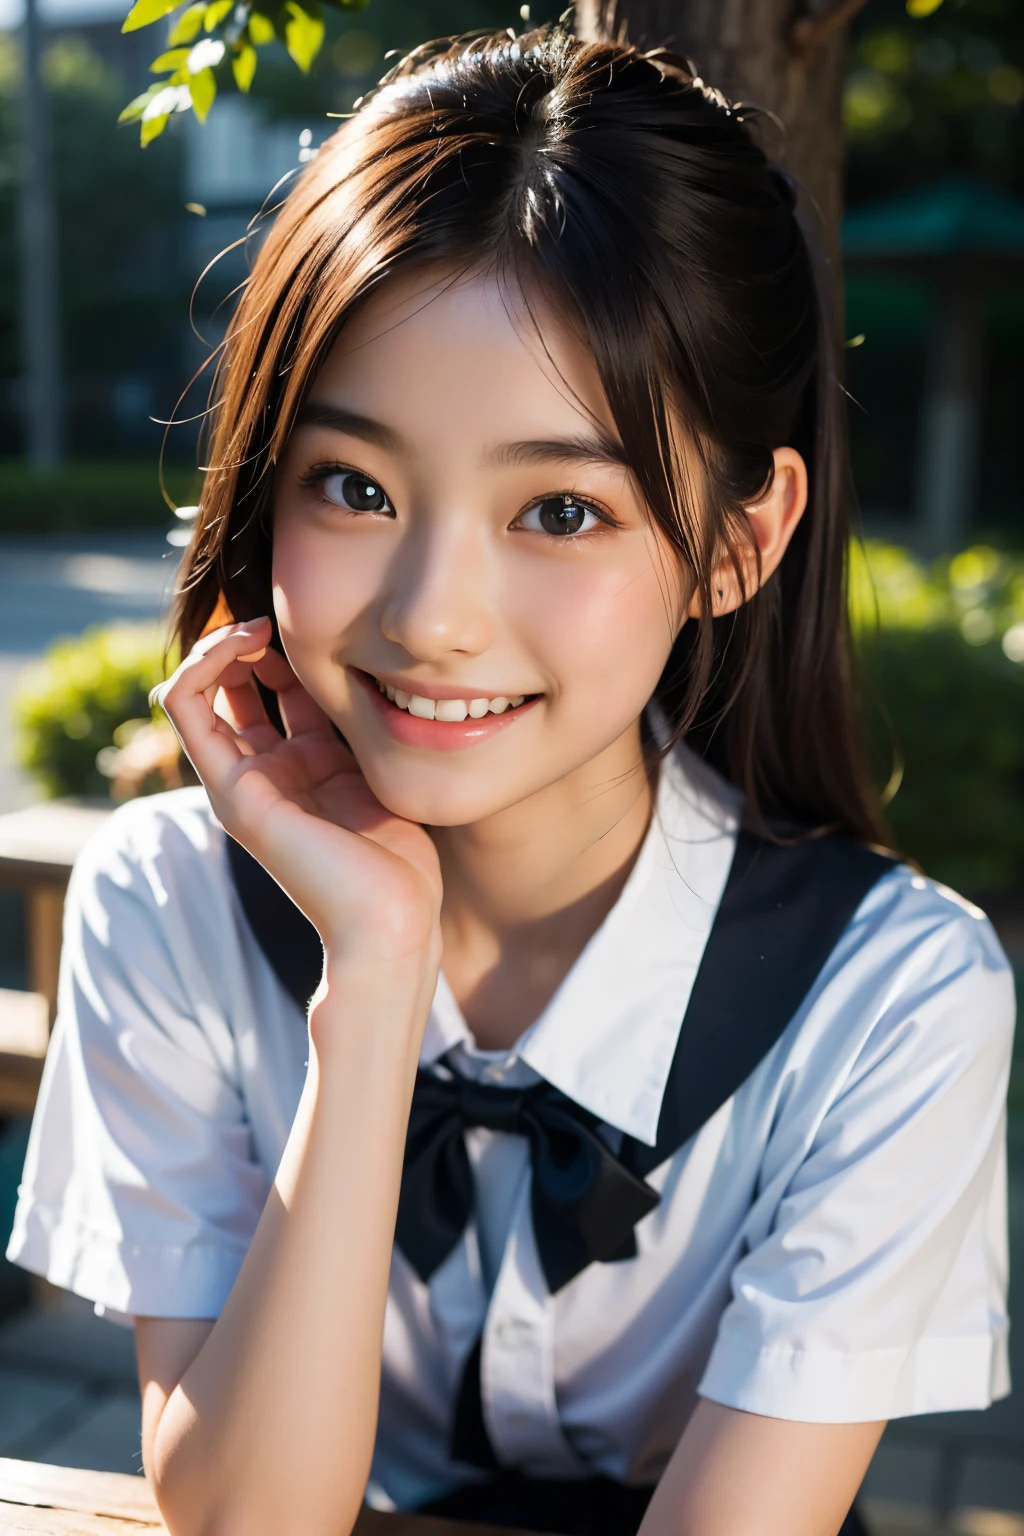 鏡片: 135mm f1.8, (最好的品質),(原始照片), (桌上:1.1), (美麗的 17 歲日本女孩), 可愛的臉孔, (臉型輪廓分明:0.7), (雀斑:0.4), dappled 陽光, 戲劇性的燈光, (日本學校制服), (在校园), 害羞的, (特寫鏡頭:1.2), (微笑),, (明亮的眼睛)、(陽光), 鮑伯